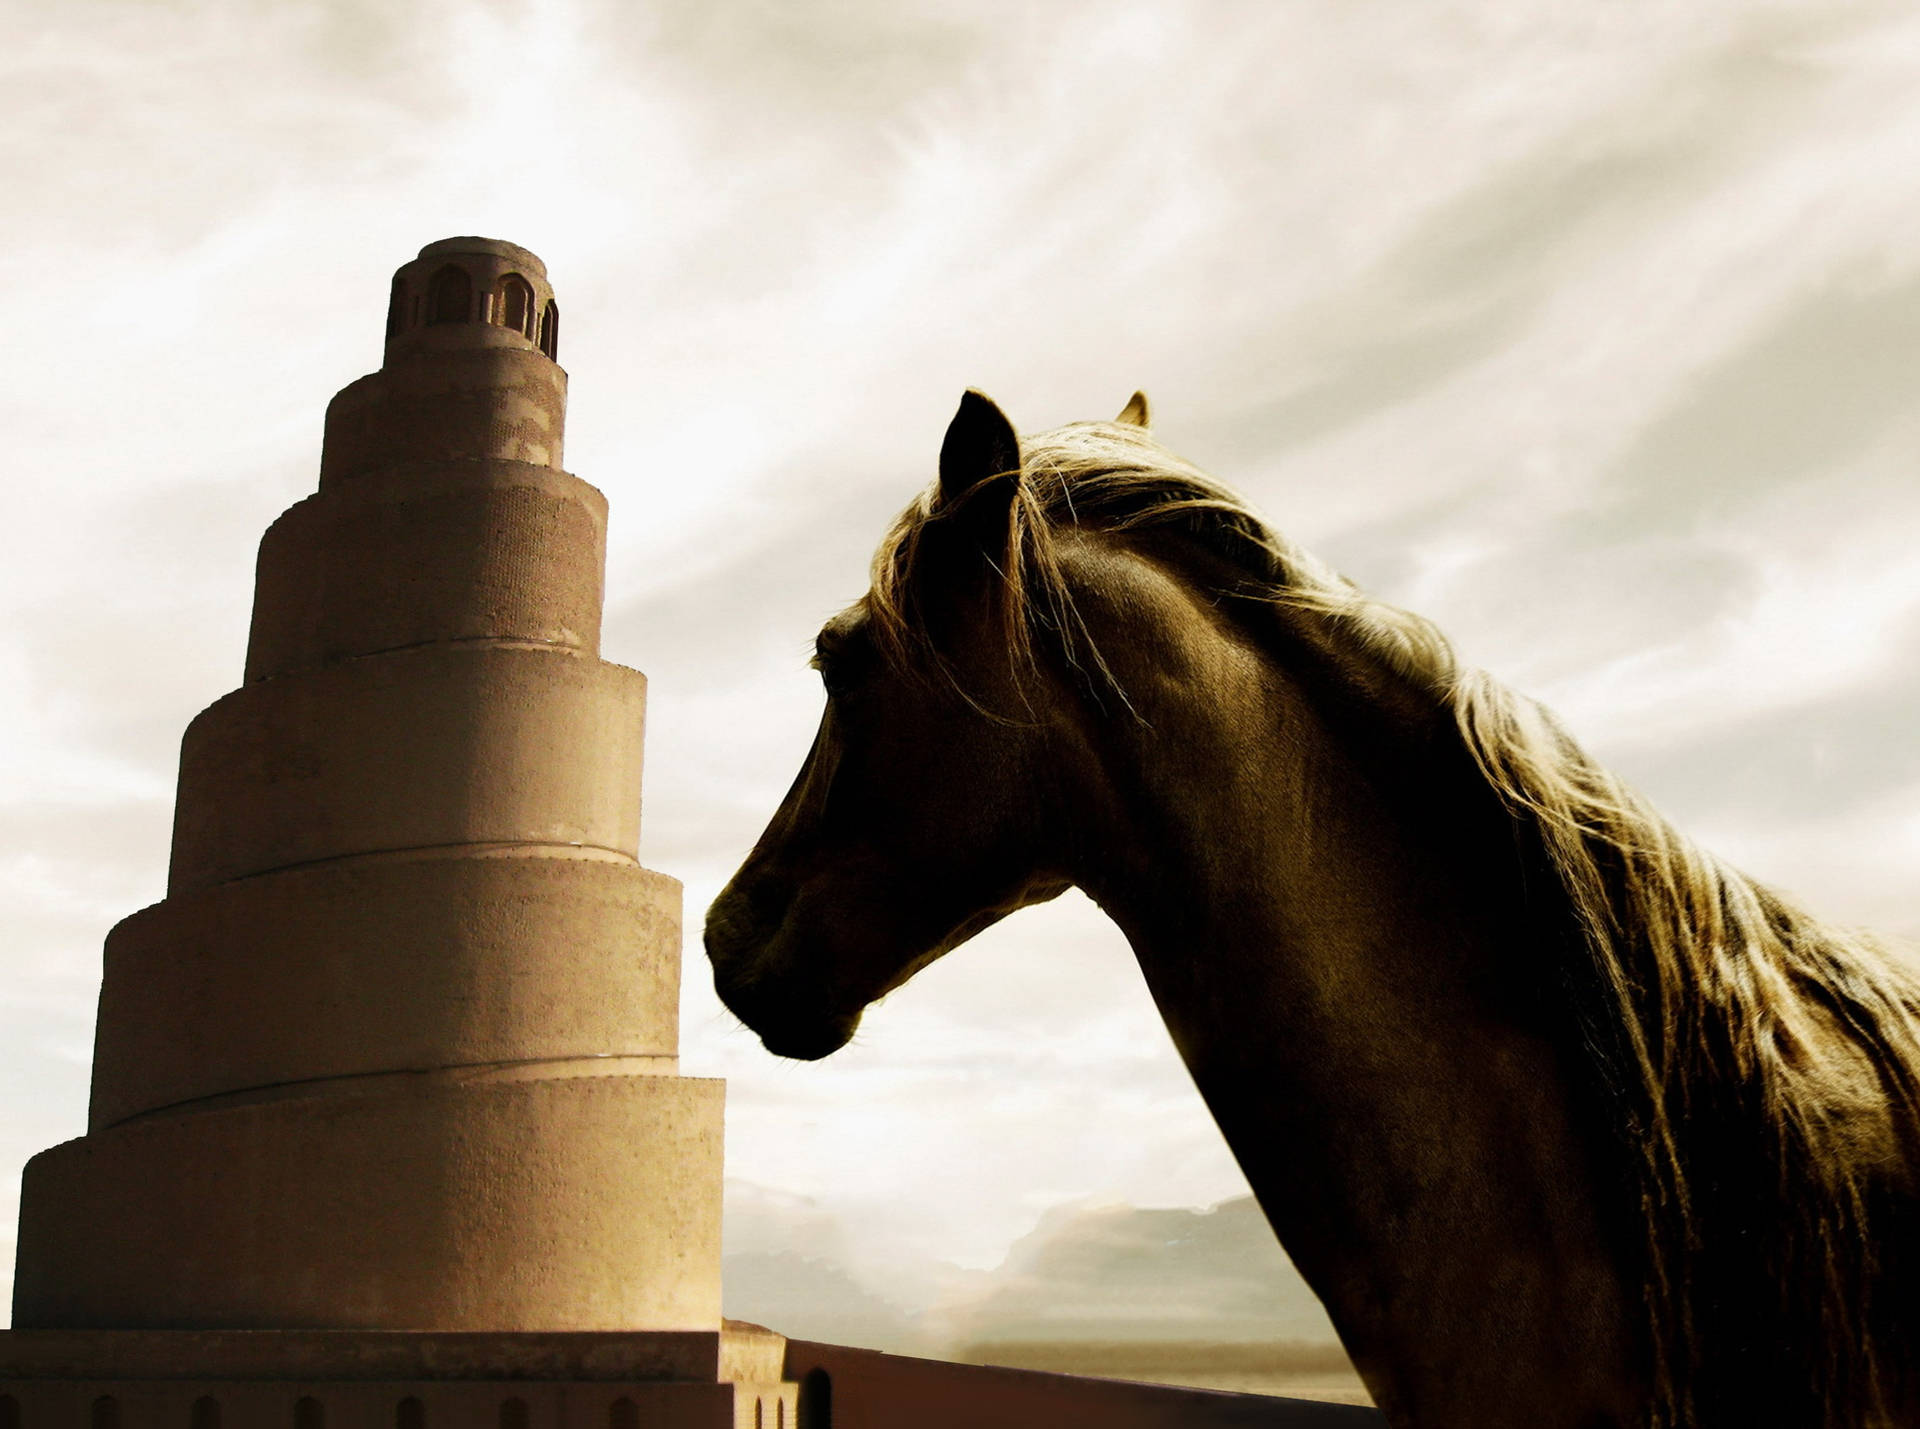 Iraq Samarra Spiral Minaret And Horse